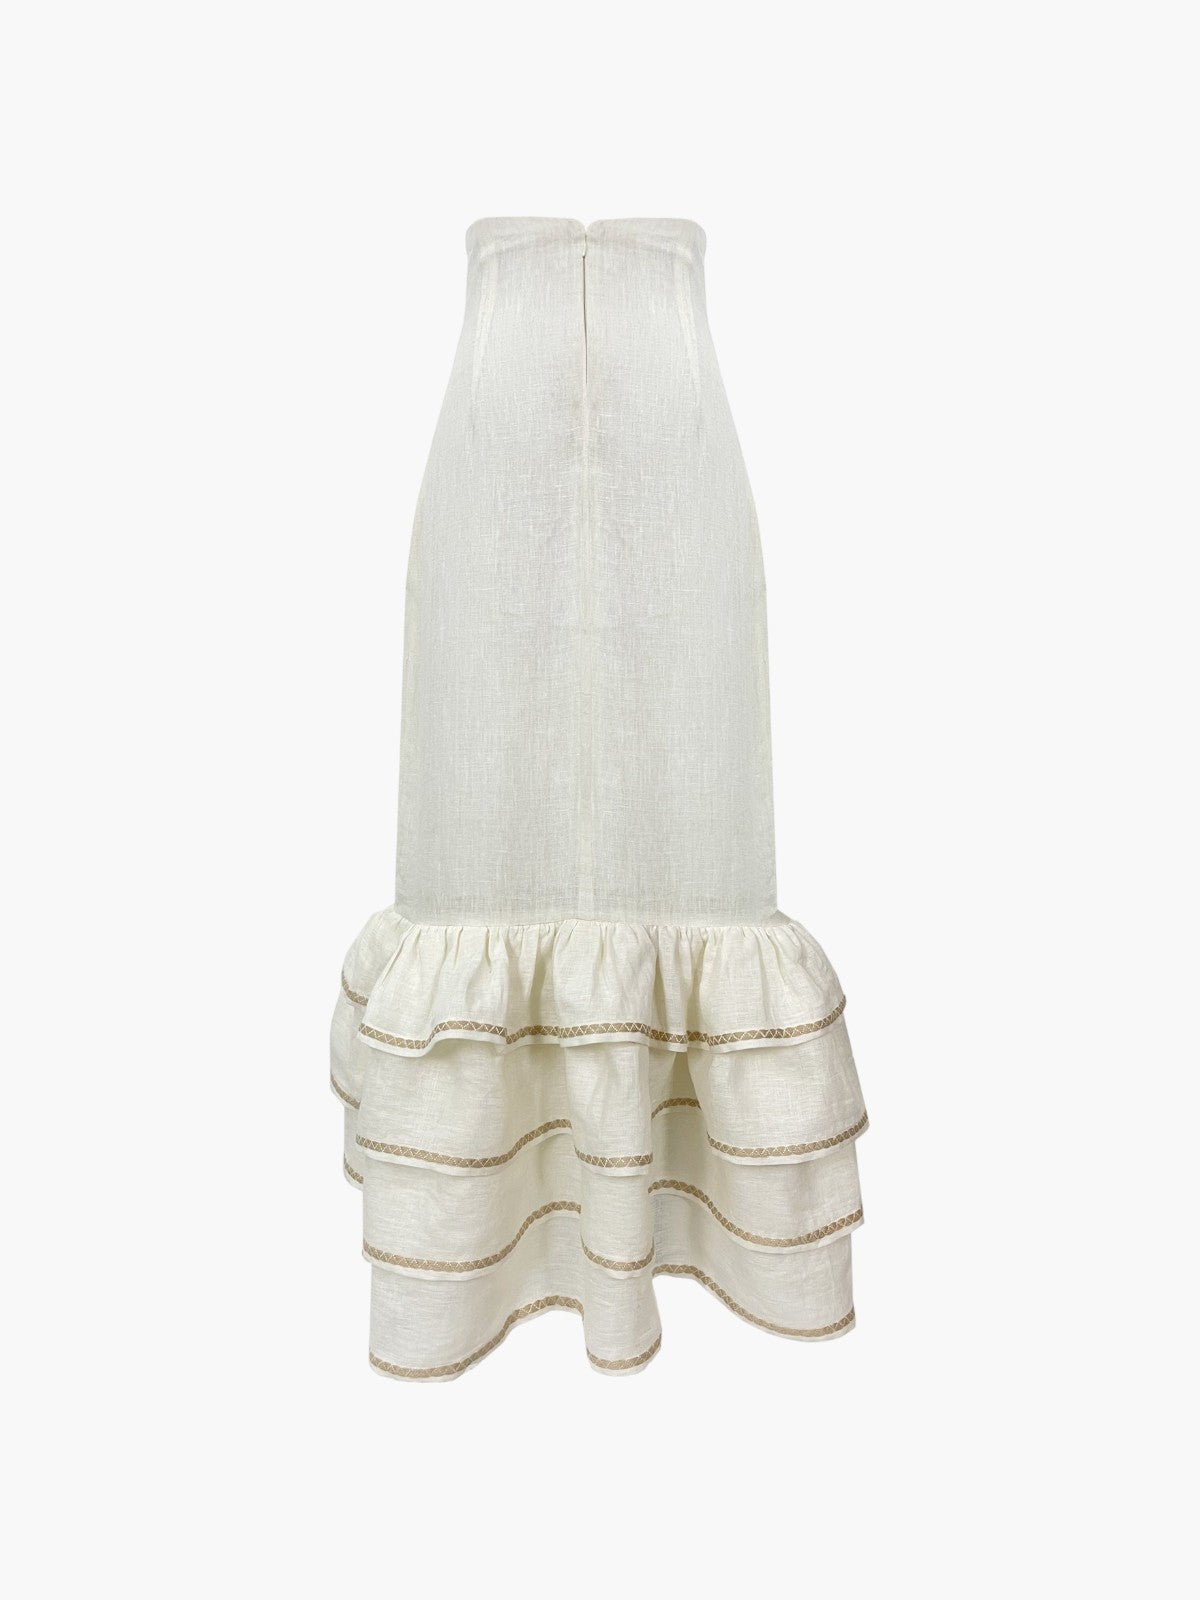 Flamenco Skirt | White Flamenco Skirt | White